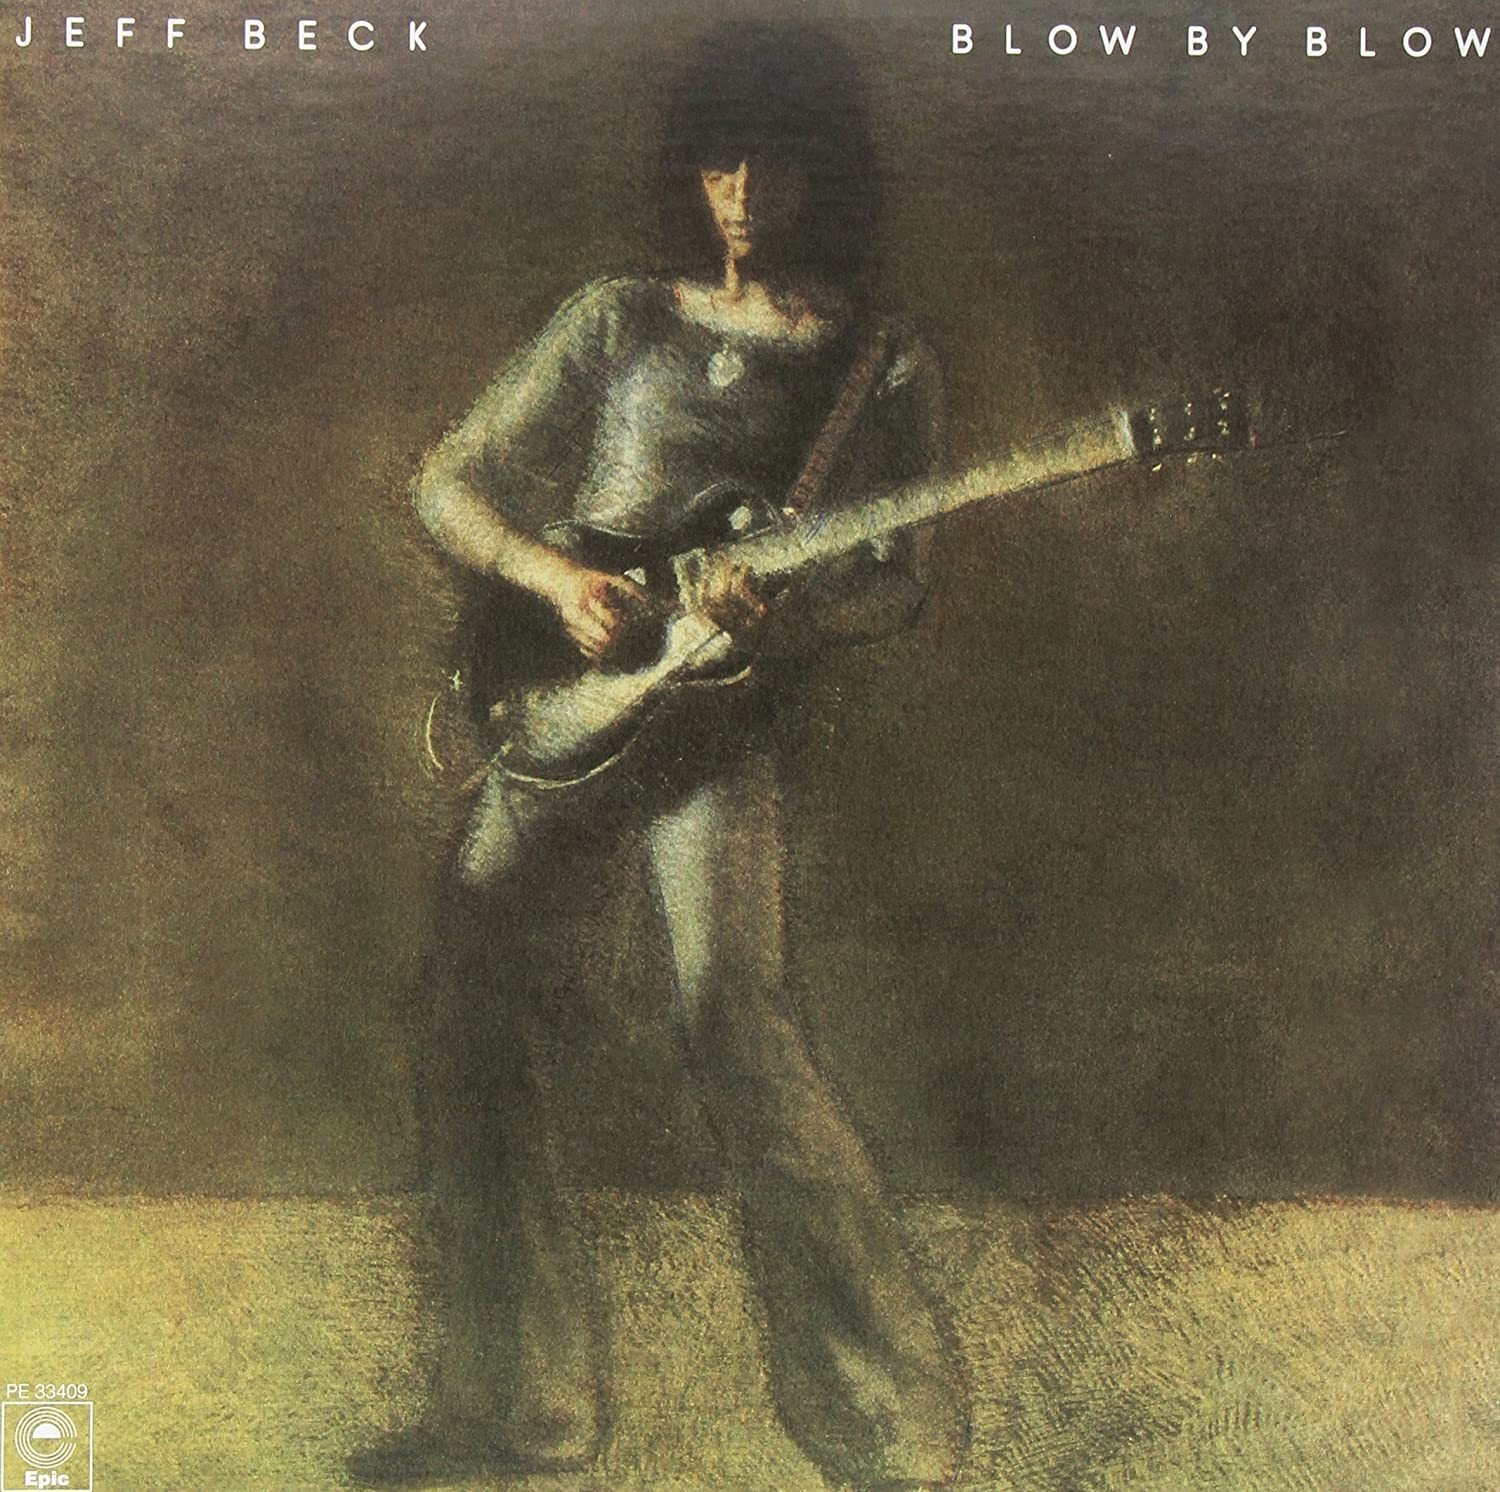 Jeff Beck - Blow By Blow (2 LP) Jeff Beck